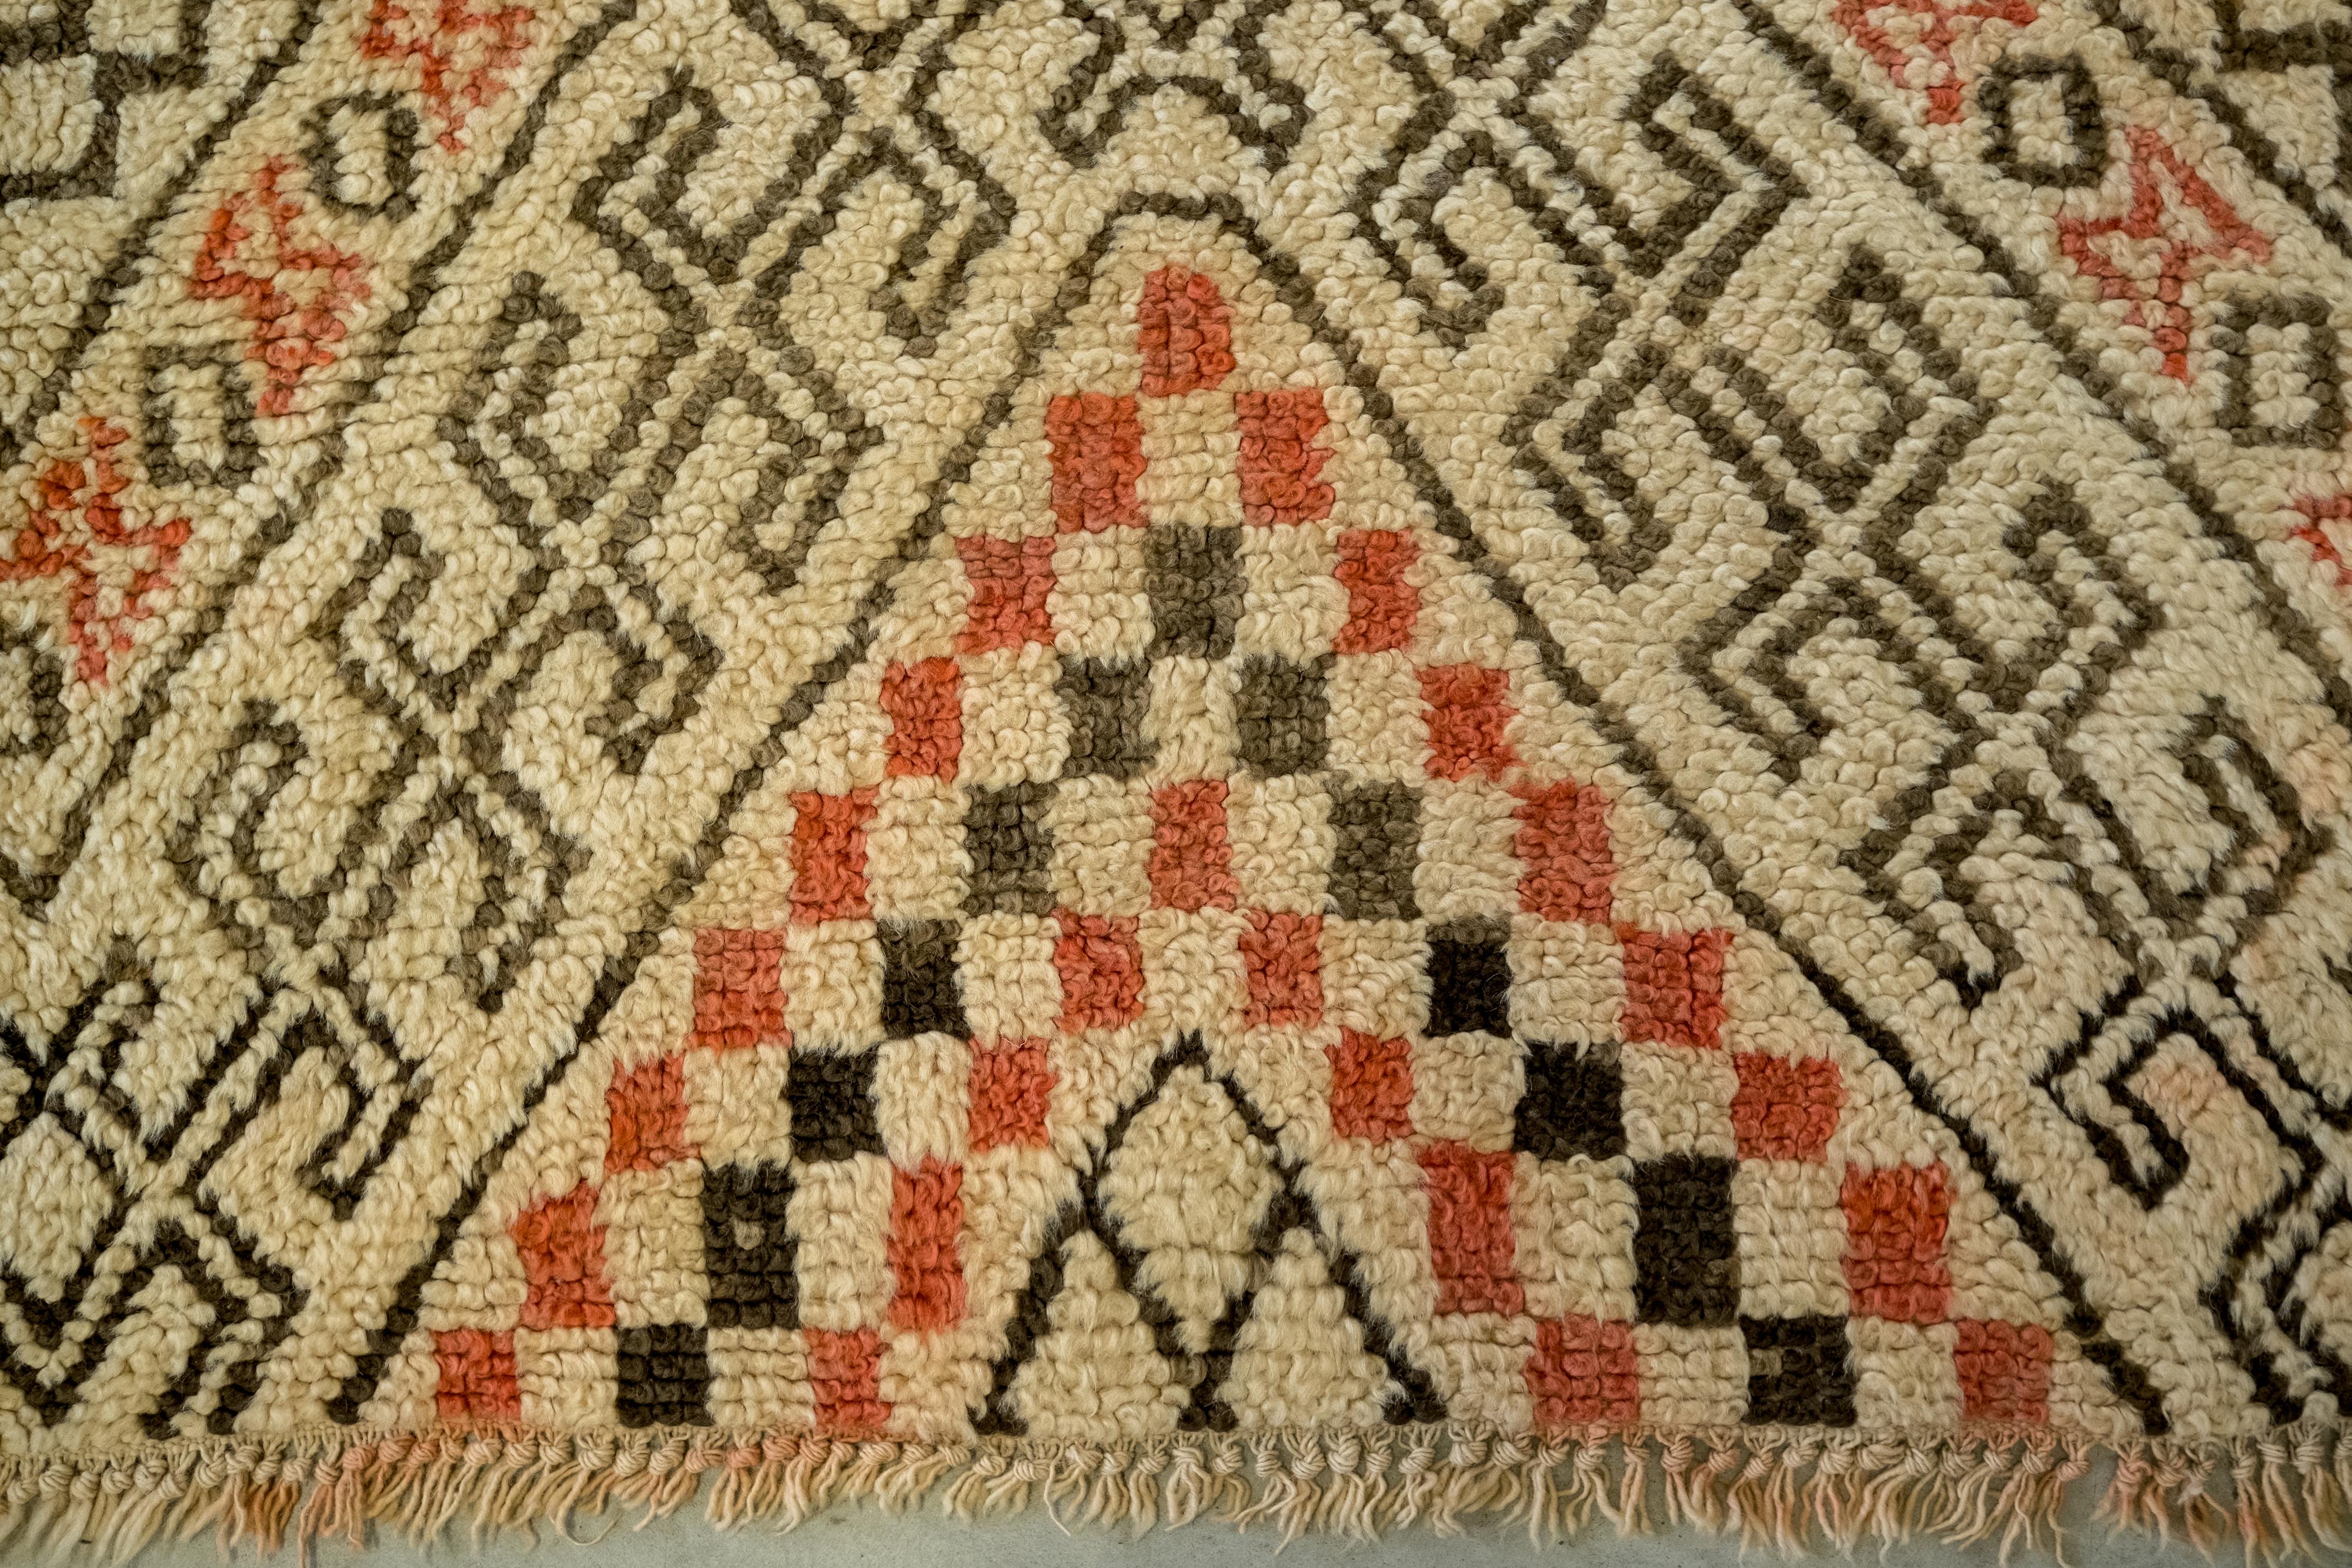 Berberteppich, Beni Ourain, Größe 420X192cm, handgeknüpft, aus 100% Wolle: Dieser seltene Berberteppich, der von den Stämmen der Beni Ourain in Marokko gefärbt wurde, ist sehr ungewöhnlich, da die Beni Ourain in der Regel Teppiche mit schwarzem und